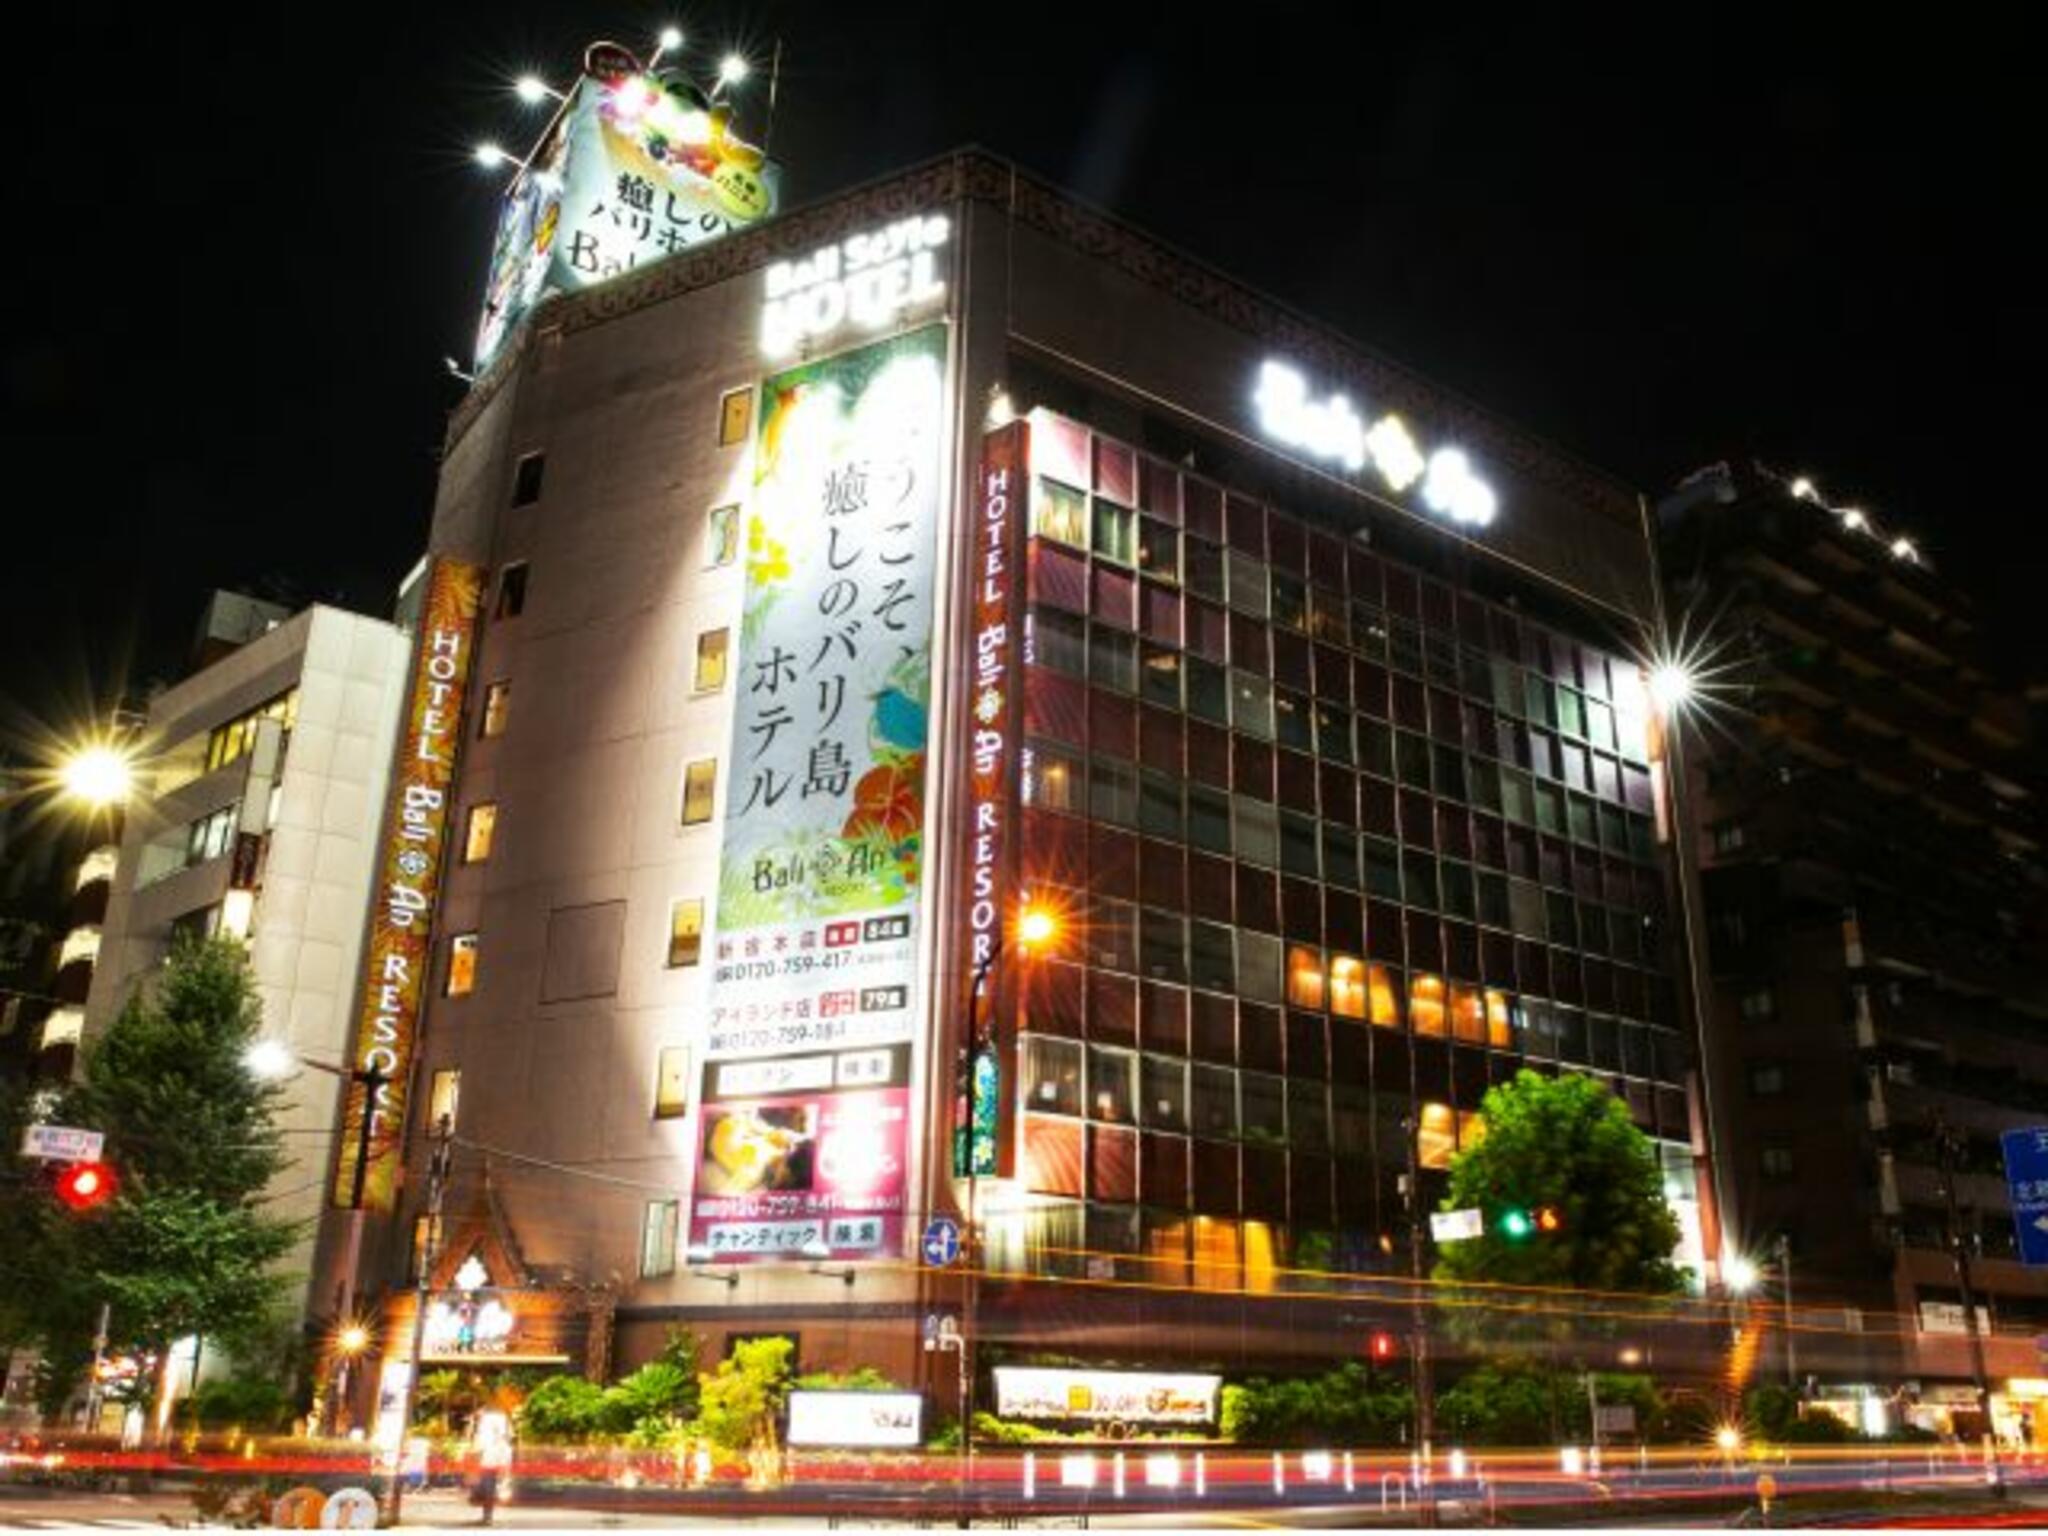 ホテルバリアンリゾート 新宿本店 - 新宿区歌舞伎町/ラブホテル 